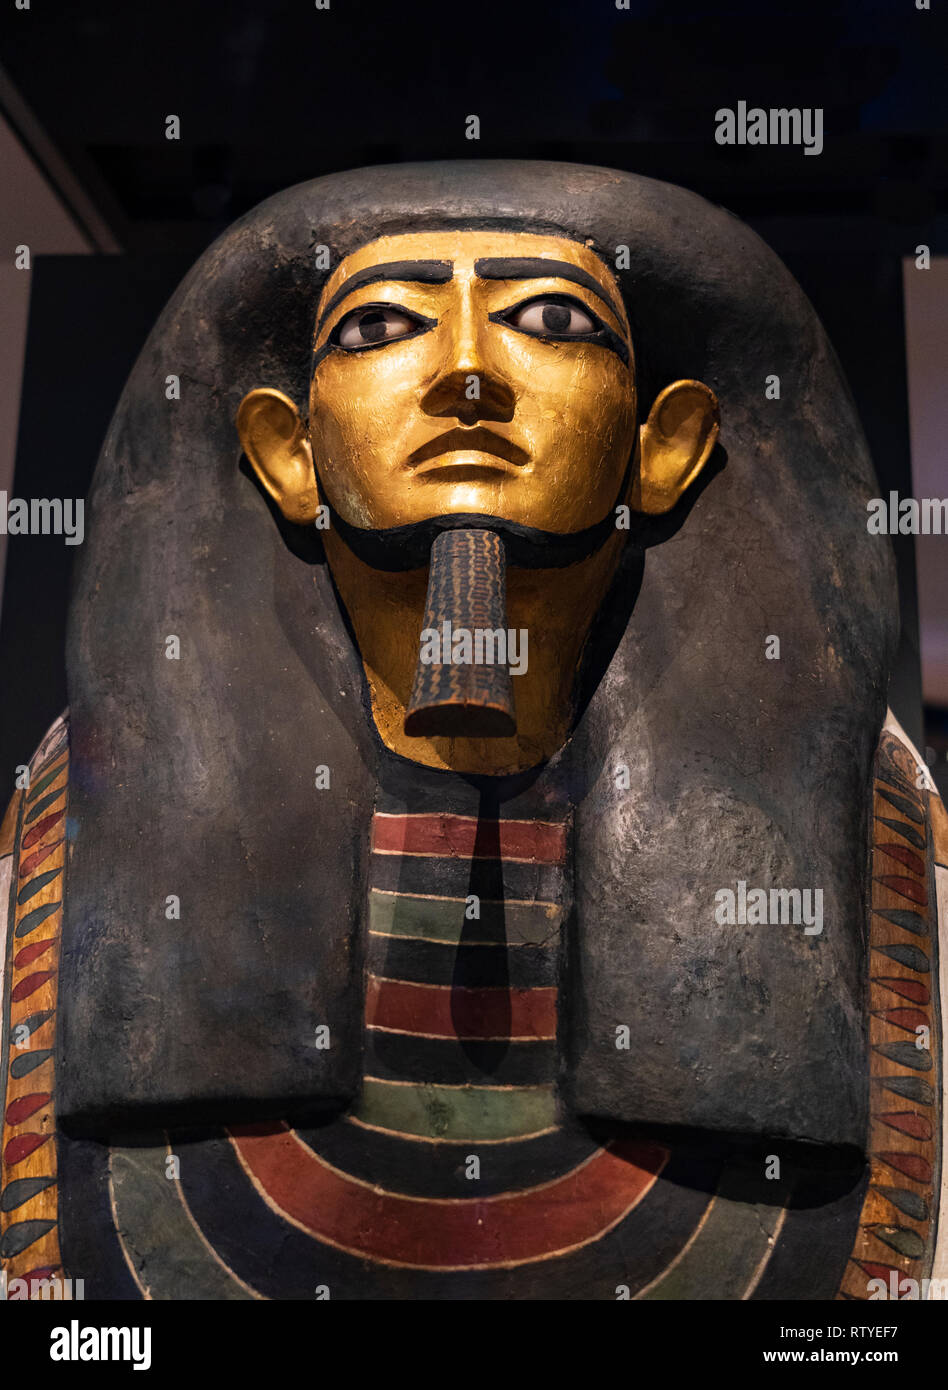 L'Intendant Khnumhotep au National Museum of Scotland, Édimbourg, Écosse, Royaume-Uni Banque D'Images